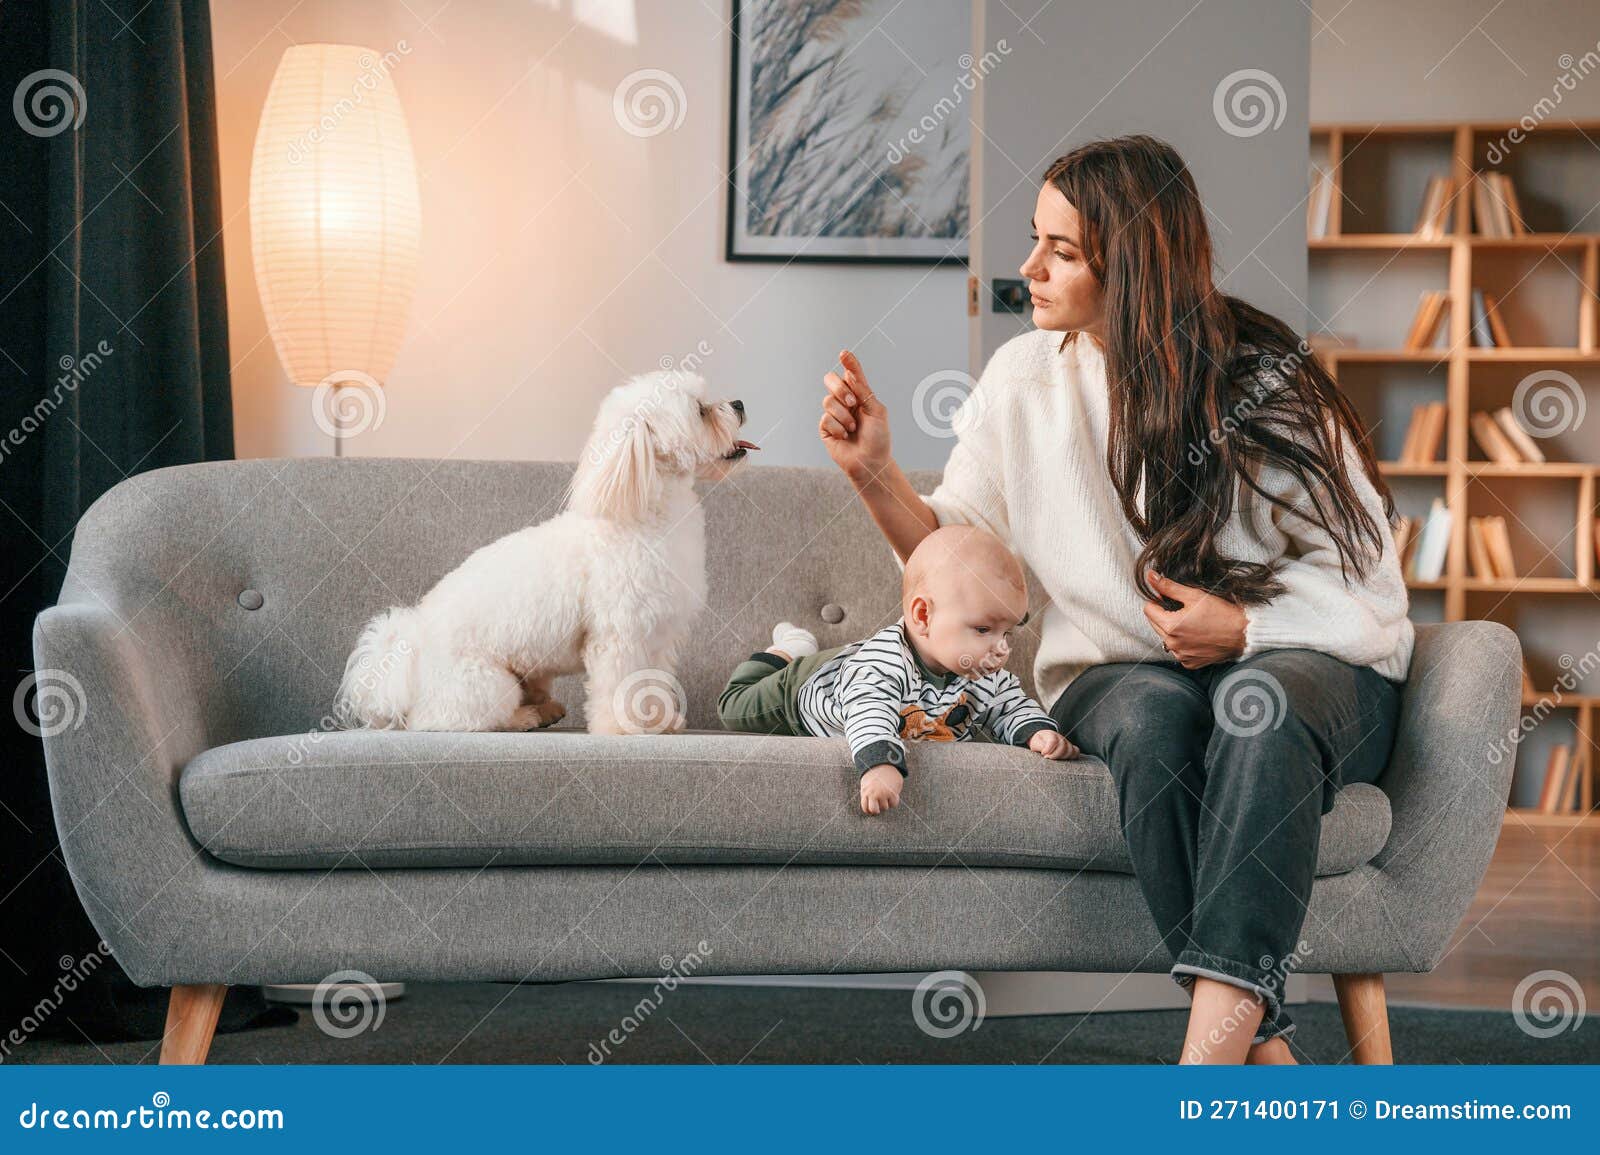 Menina brincando com o cachorro grande em casa sala de estar na cor branca.  Cão é da raça fila brasileiro. O conceito de estilo de vida, infância,  educação fotos, imagens de ©